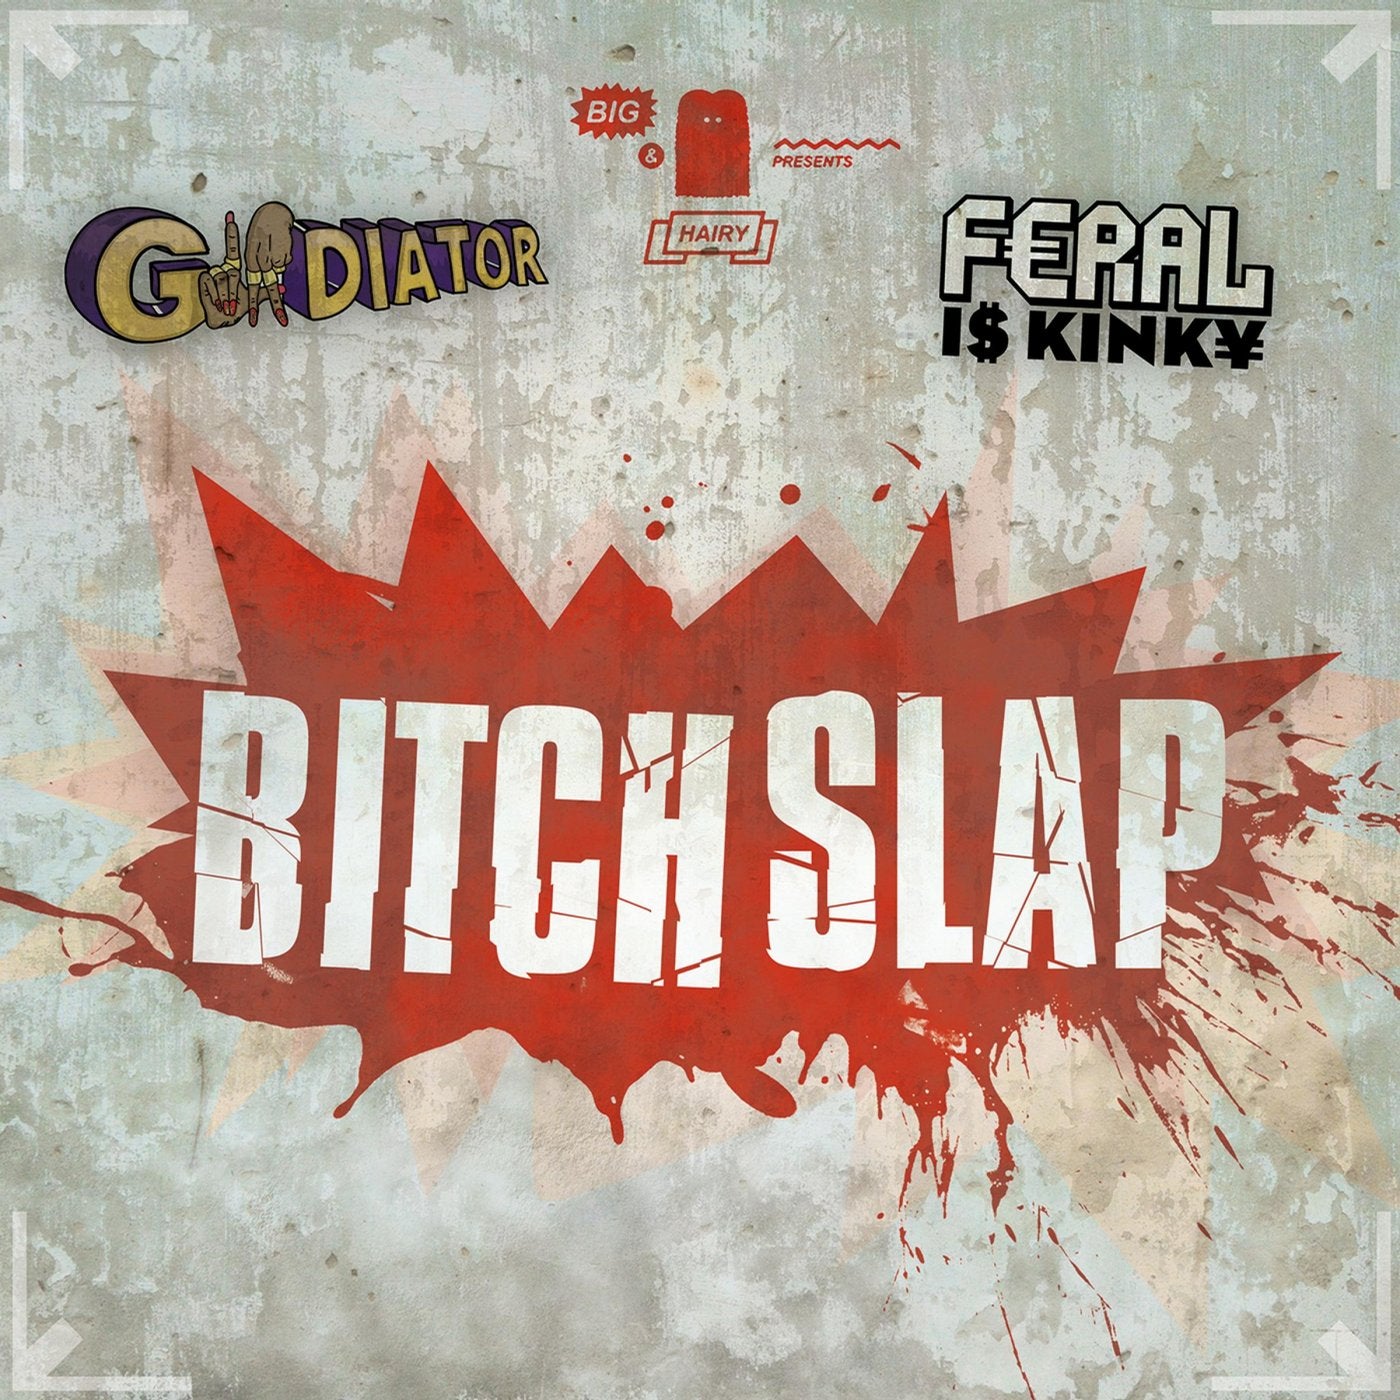 Bitch Slap